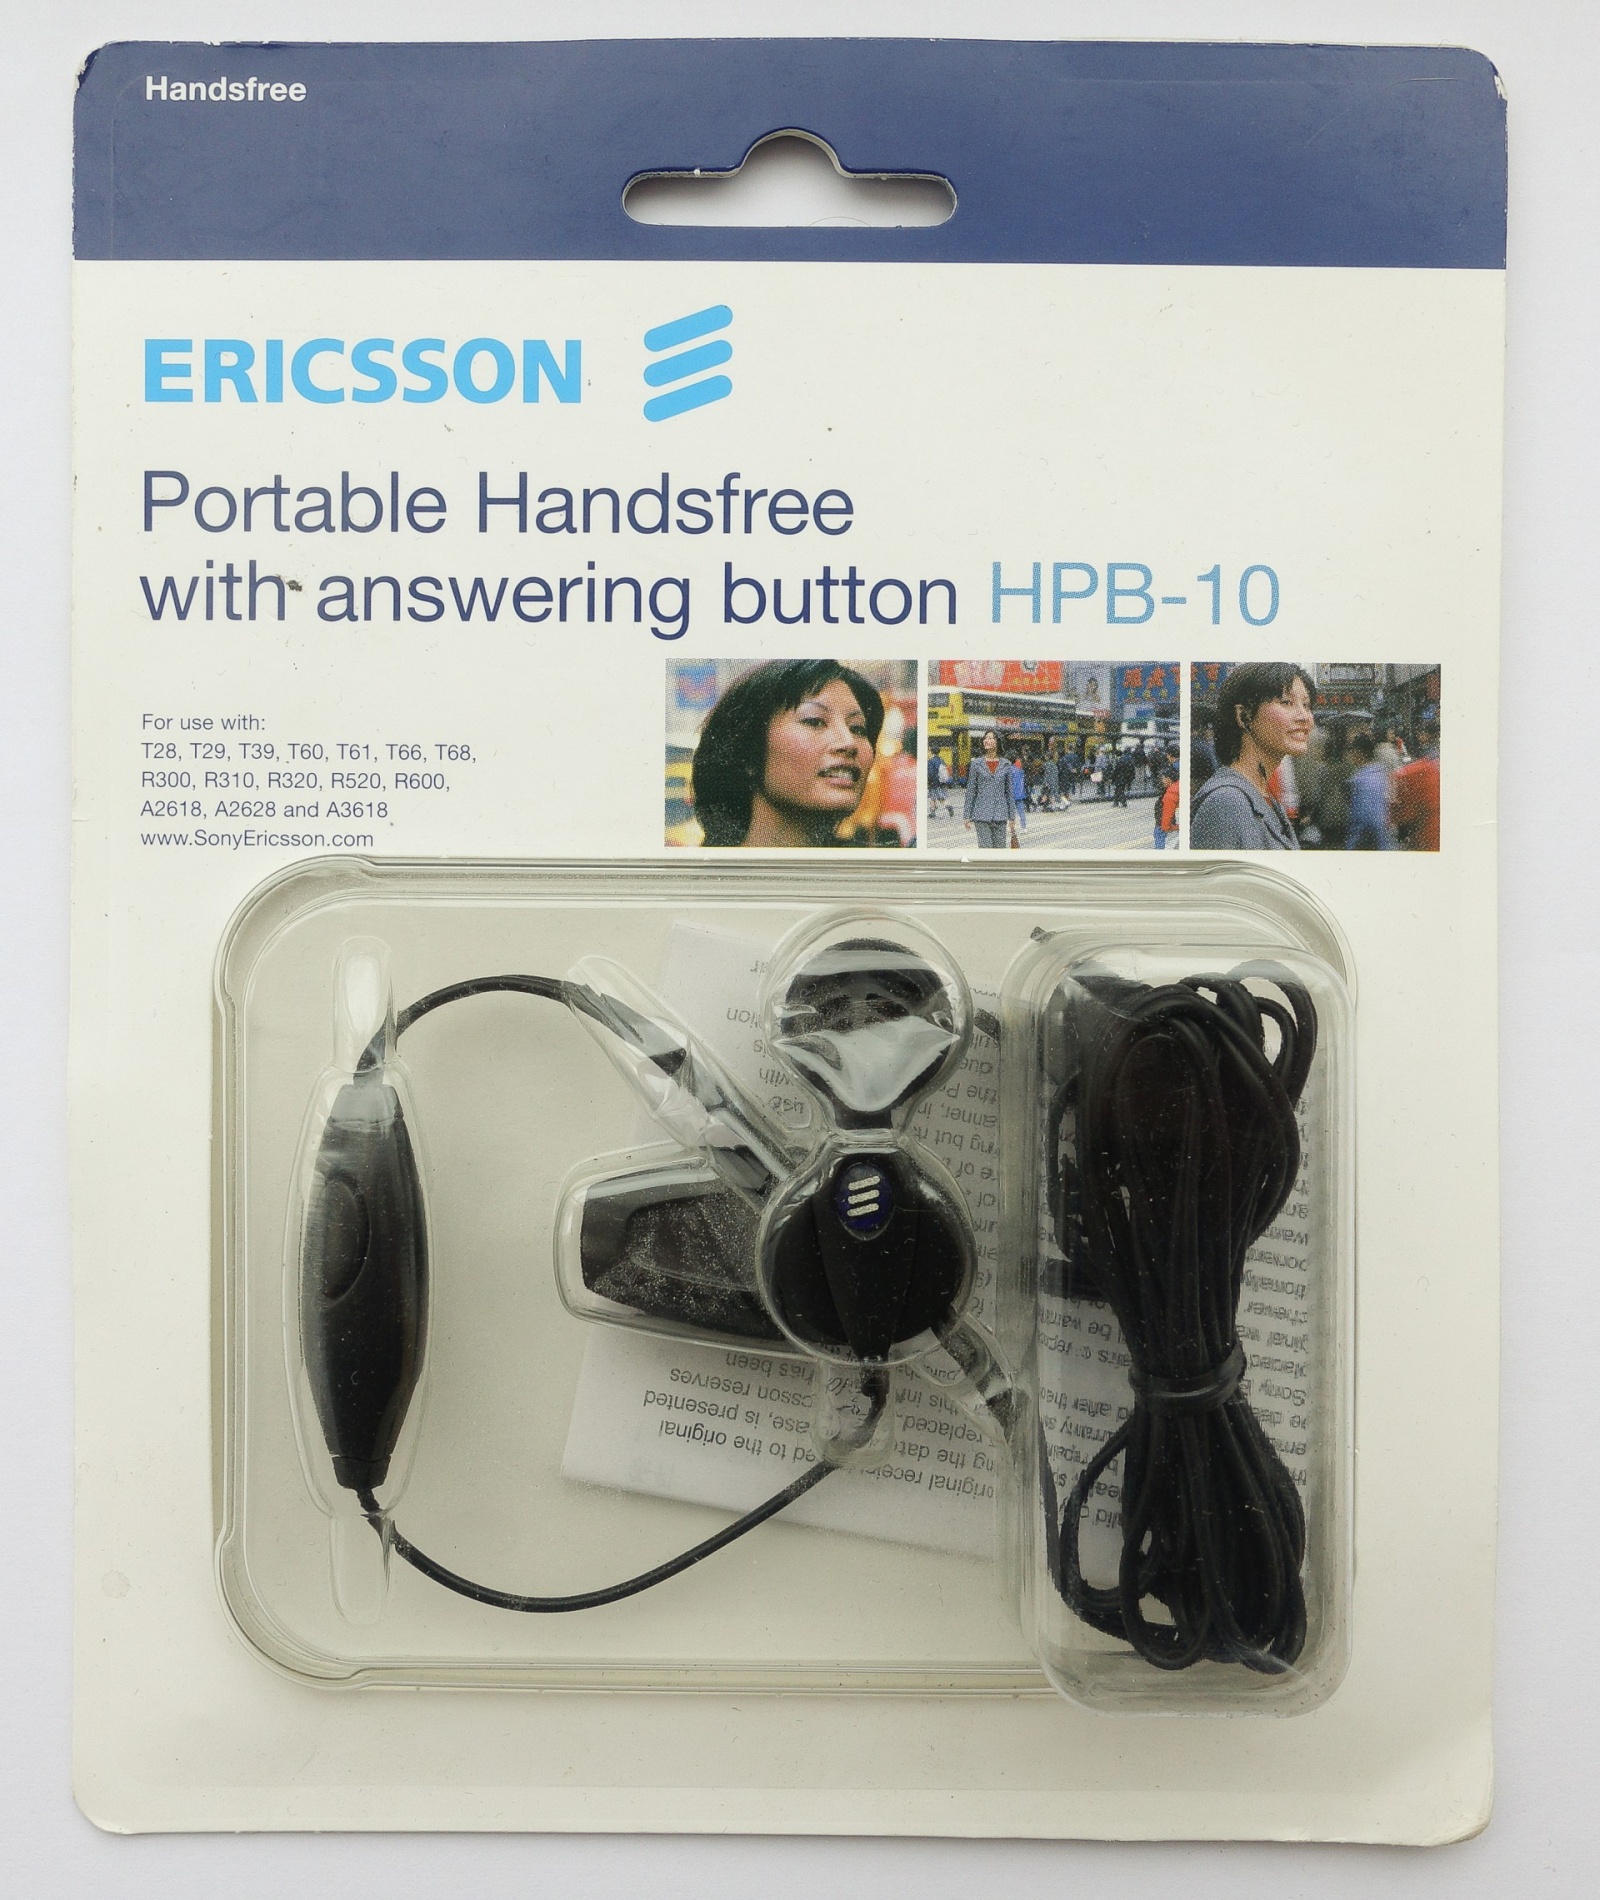 Древности: Ericsson T39 и ранний мобильный интернет - 11